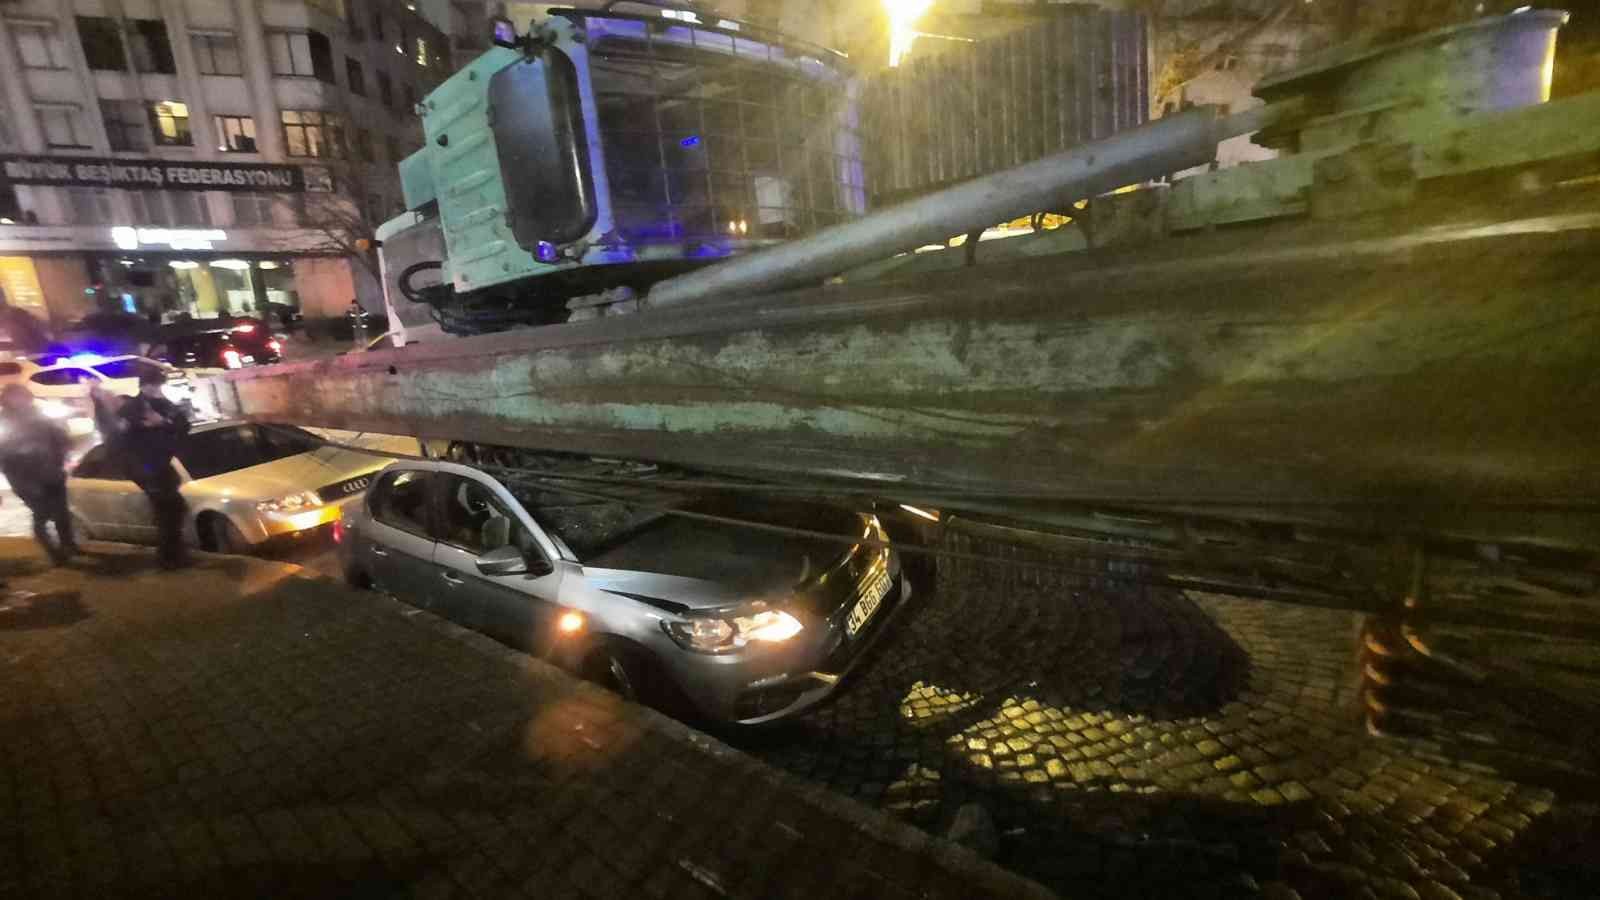 Beşiktaş’ta akılalmaz kaza, tırın taşıdığı vinç araçların üzerine devrildi #istanbul